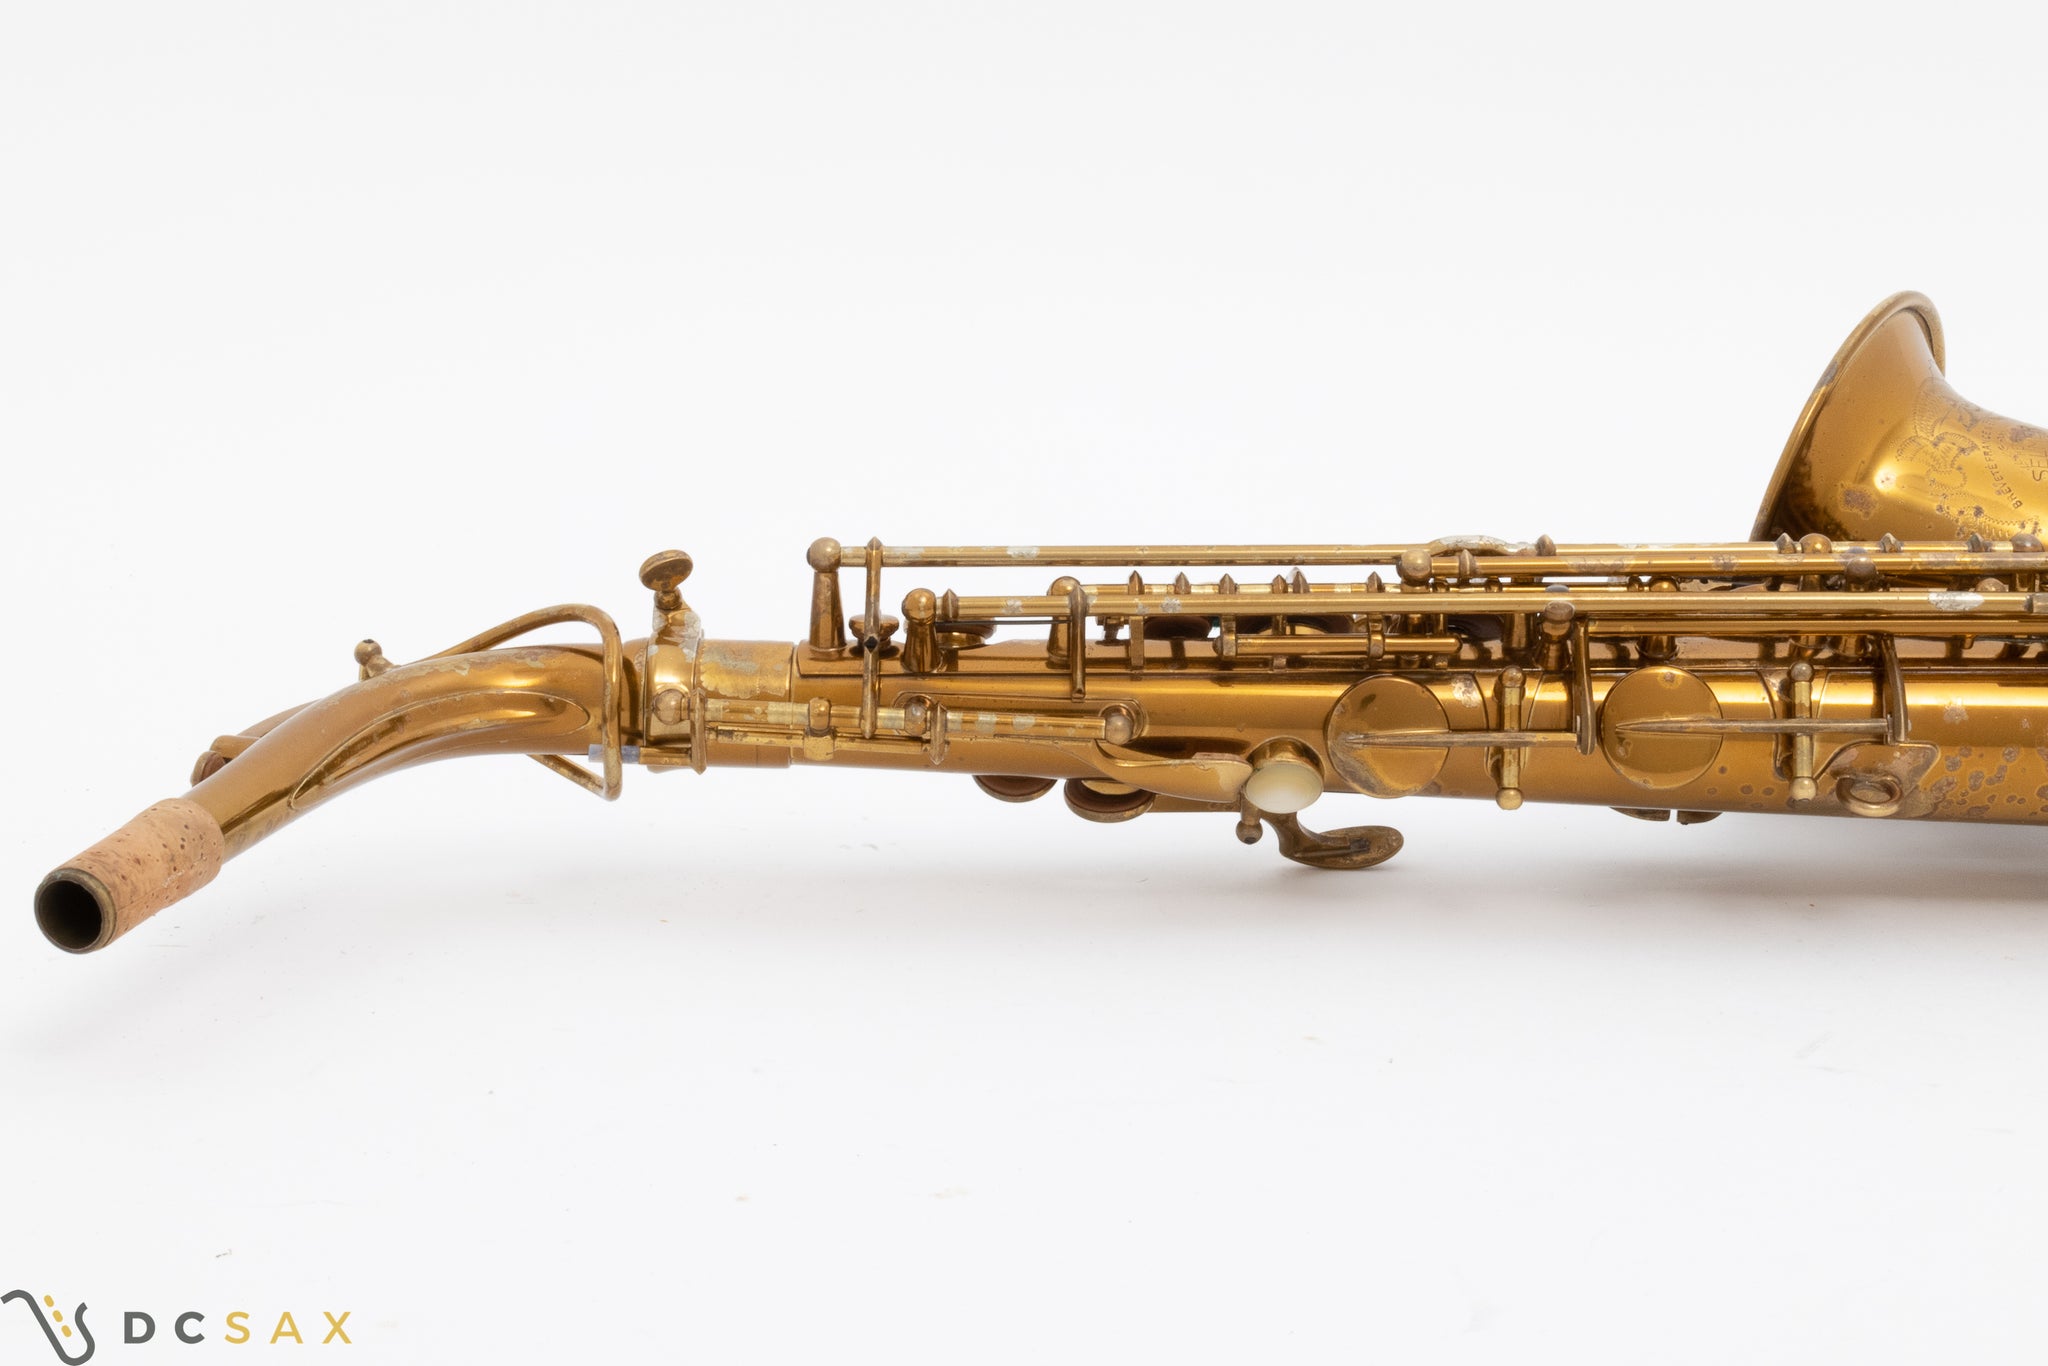 55,xxx Selmer Super Balanced Action Alto Saxophone, 97% Original Lacquer, Fresh Overhaul, Video